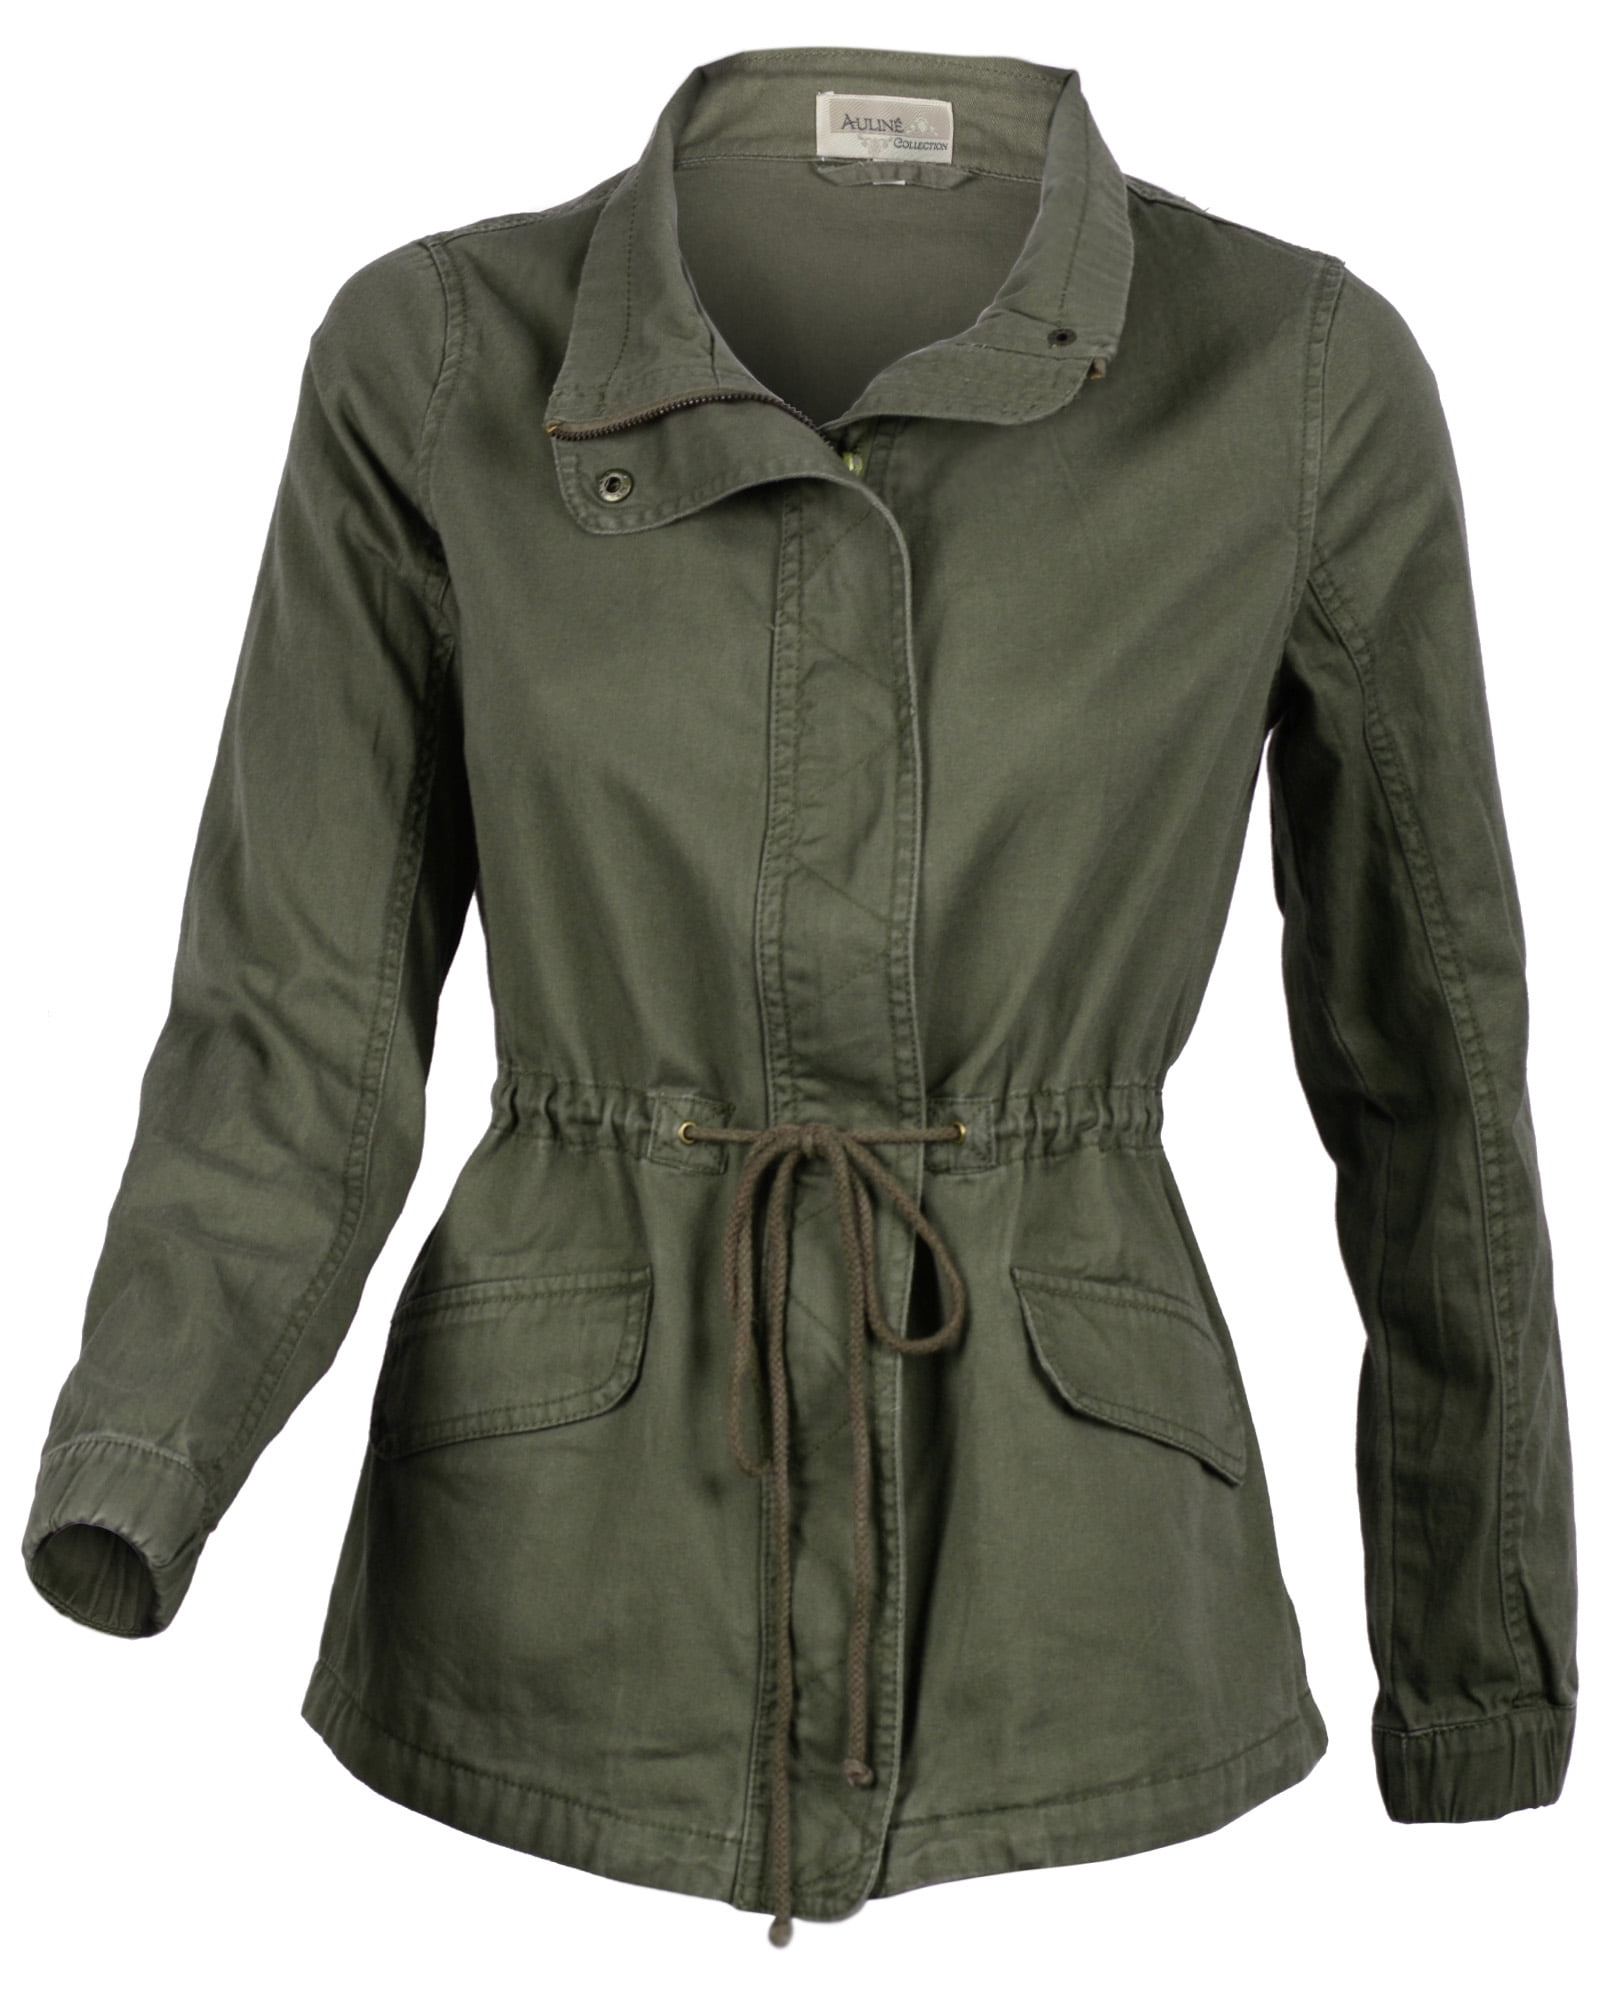 Women's Premium Vintage Wash Olive Green Lightweight Military Fashion ...